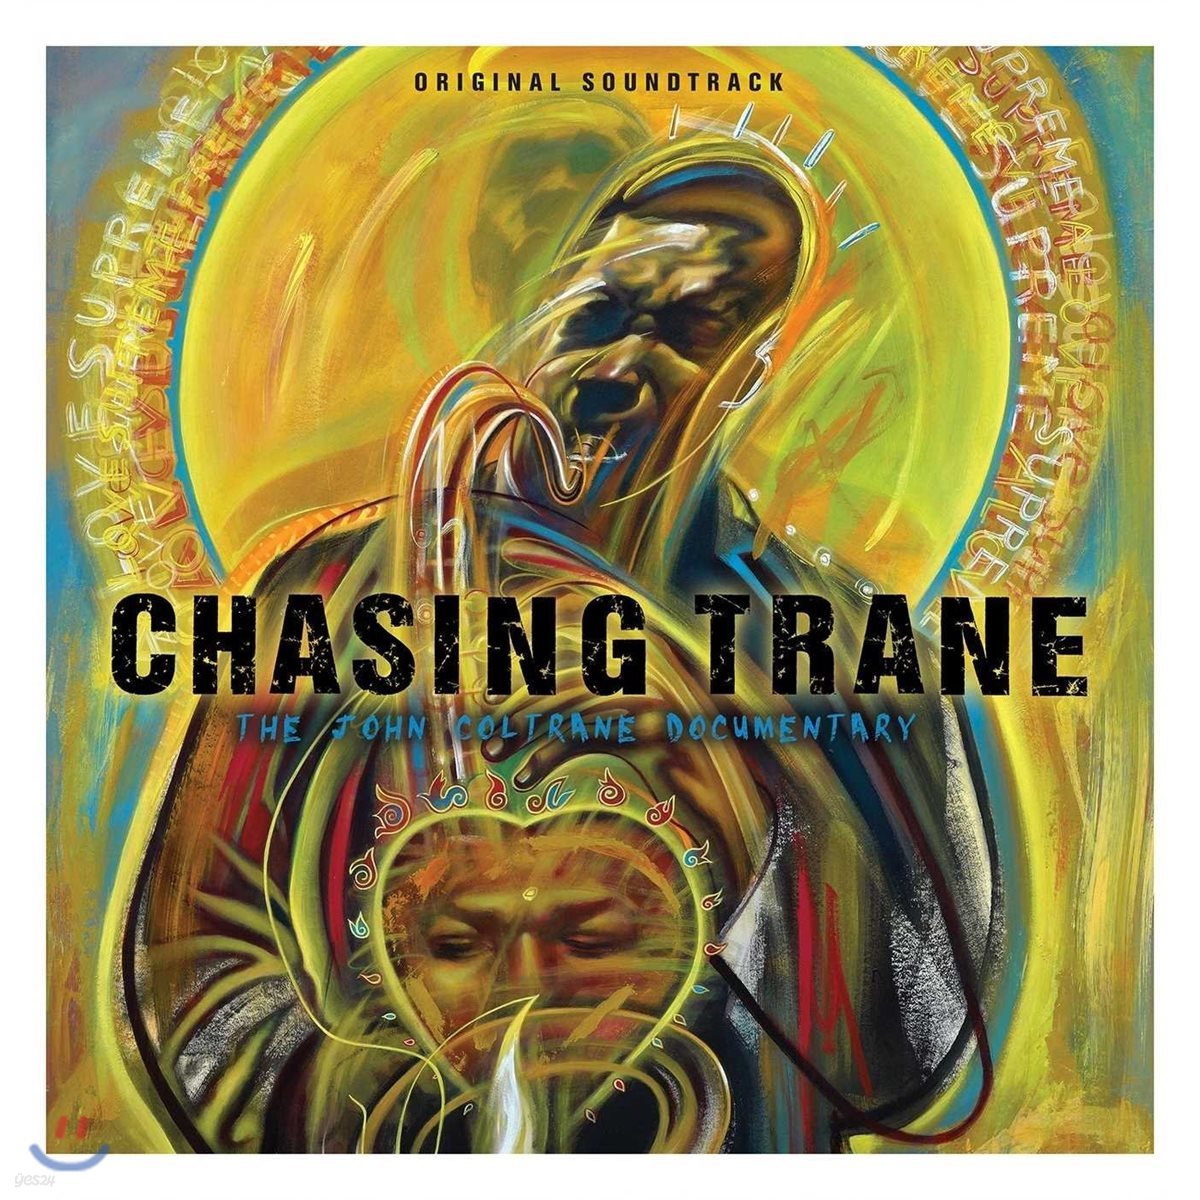 존 콜트레인 스토리 다큐멘터리 음악 (Chasing Trane: The John Coltrane Documentary OST)